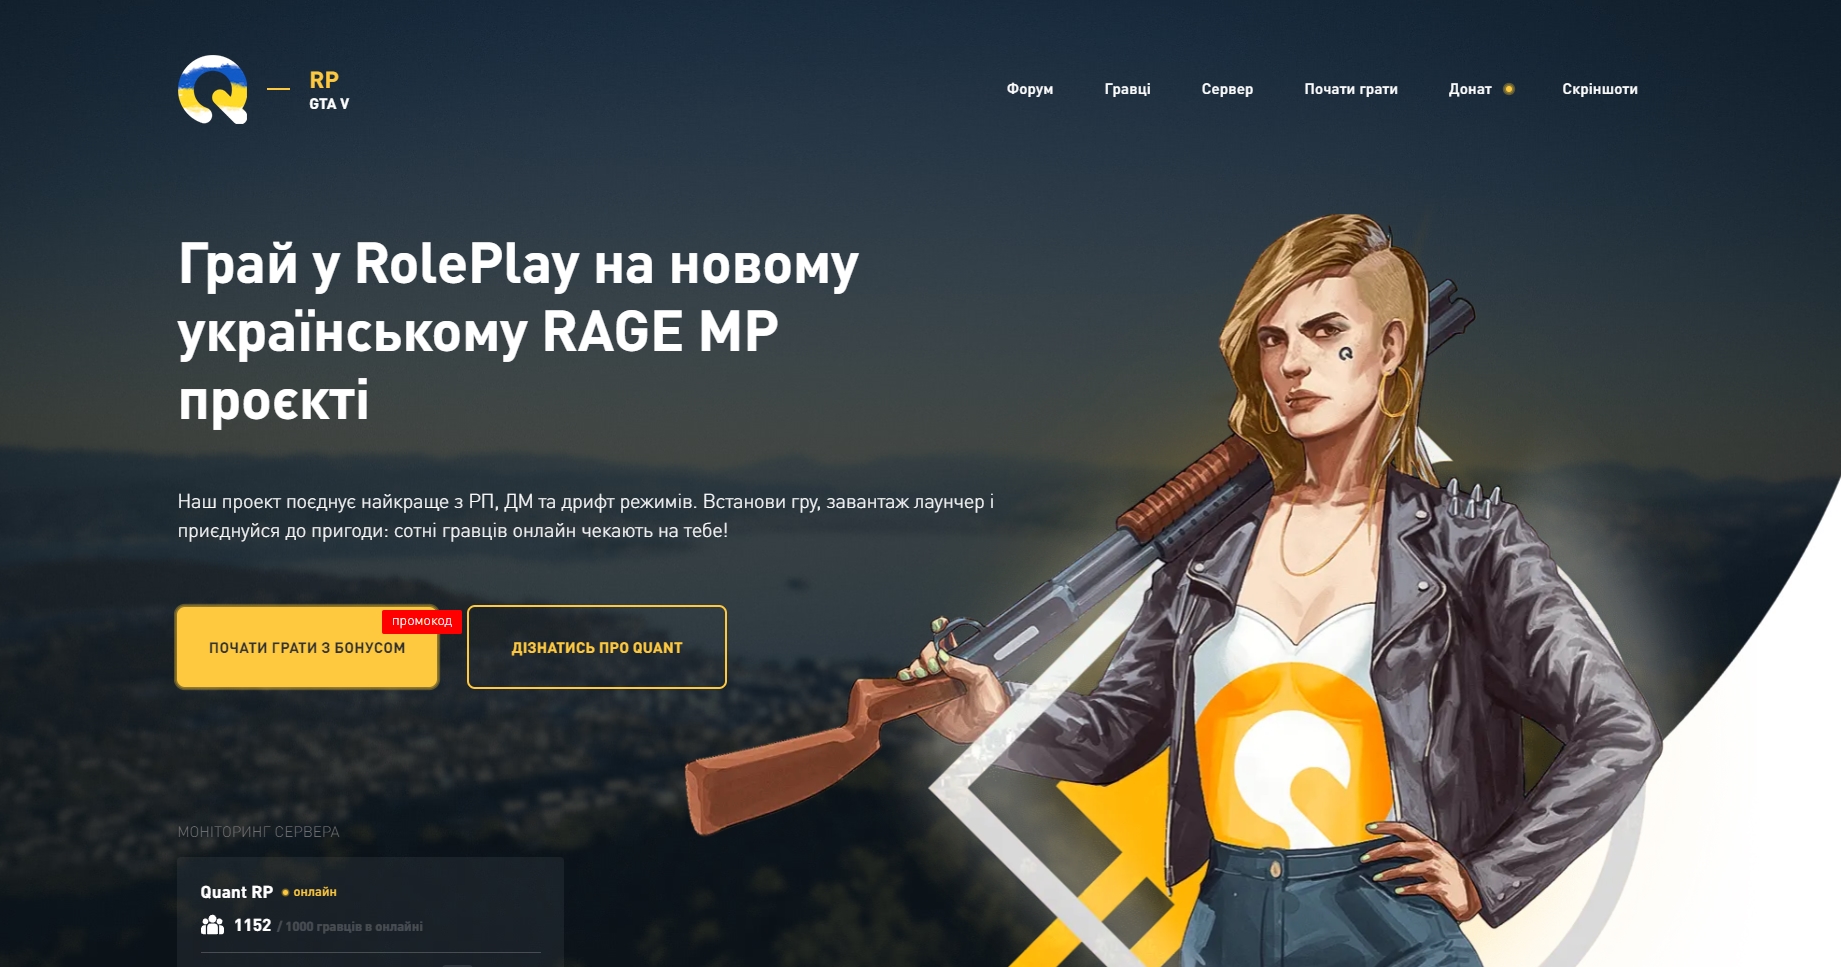 ⚔️ Quant Український RolePlay RAGE MP проєкт. Грай в ГТА онлайн по мережі